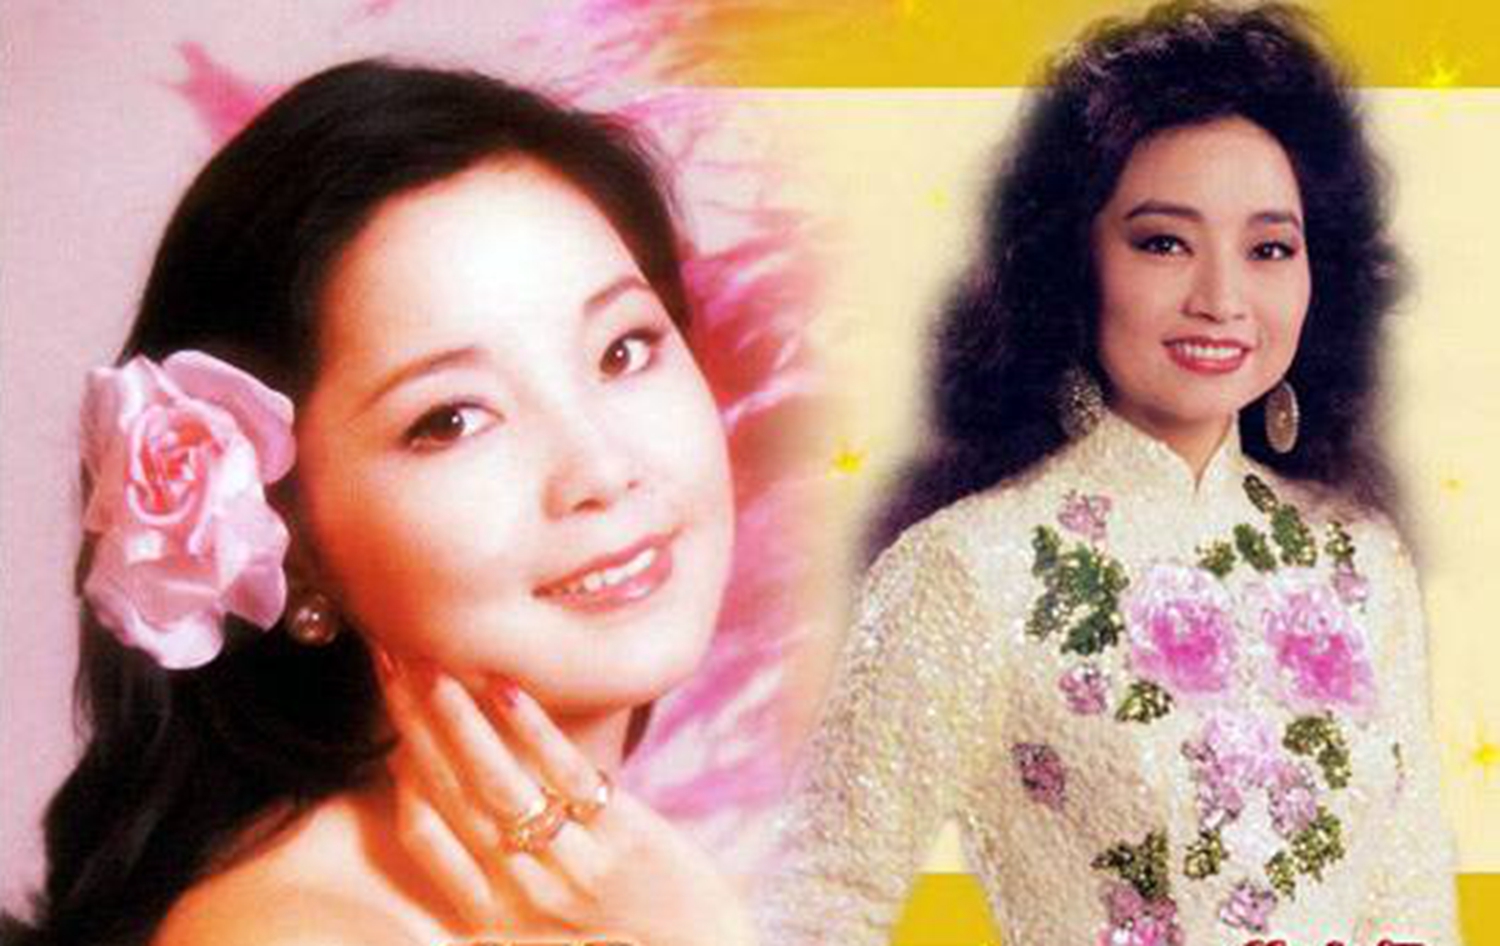 徐小凤和邓丽君,华语乐坛无法复制的两大顶尖级女歌手